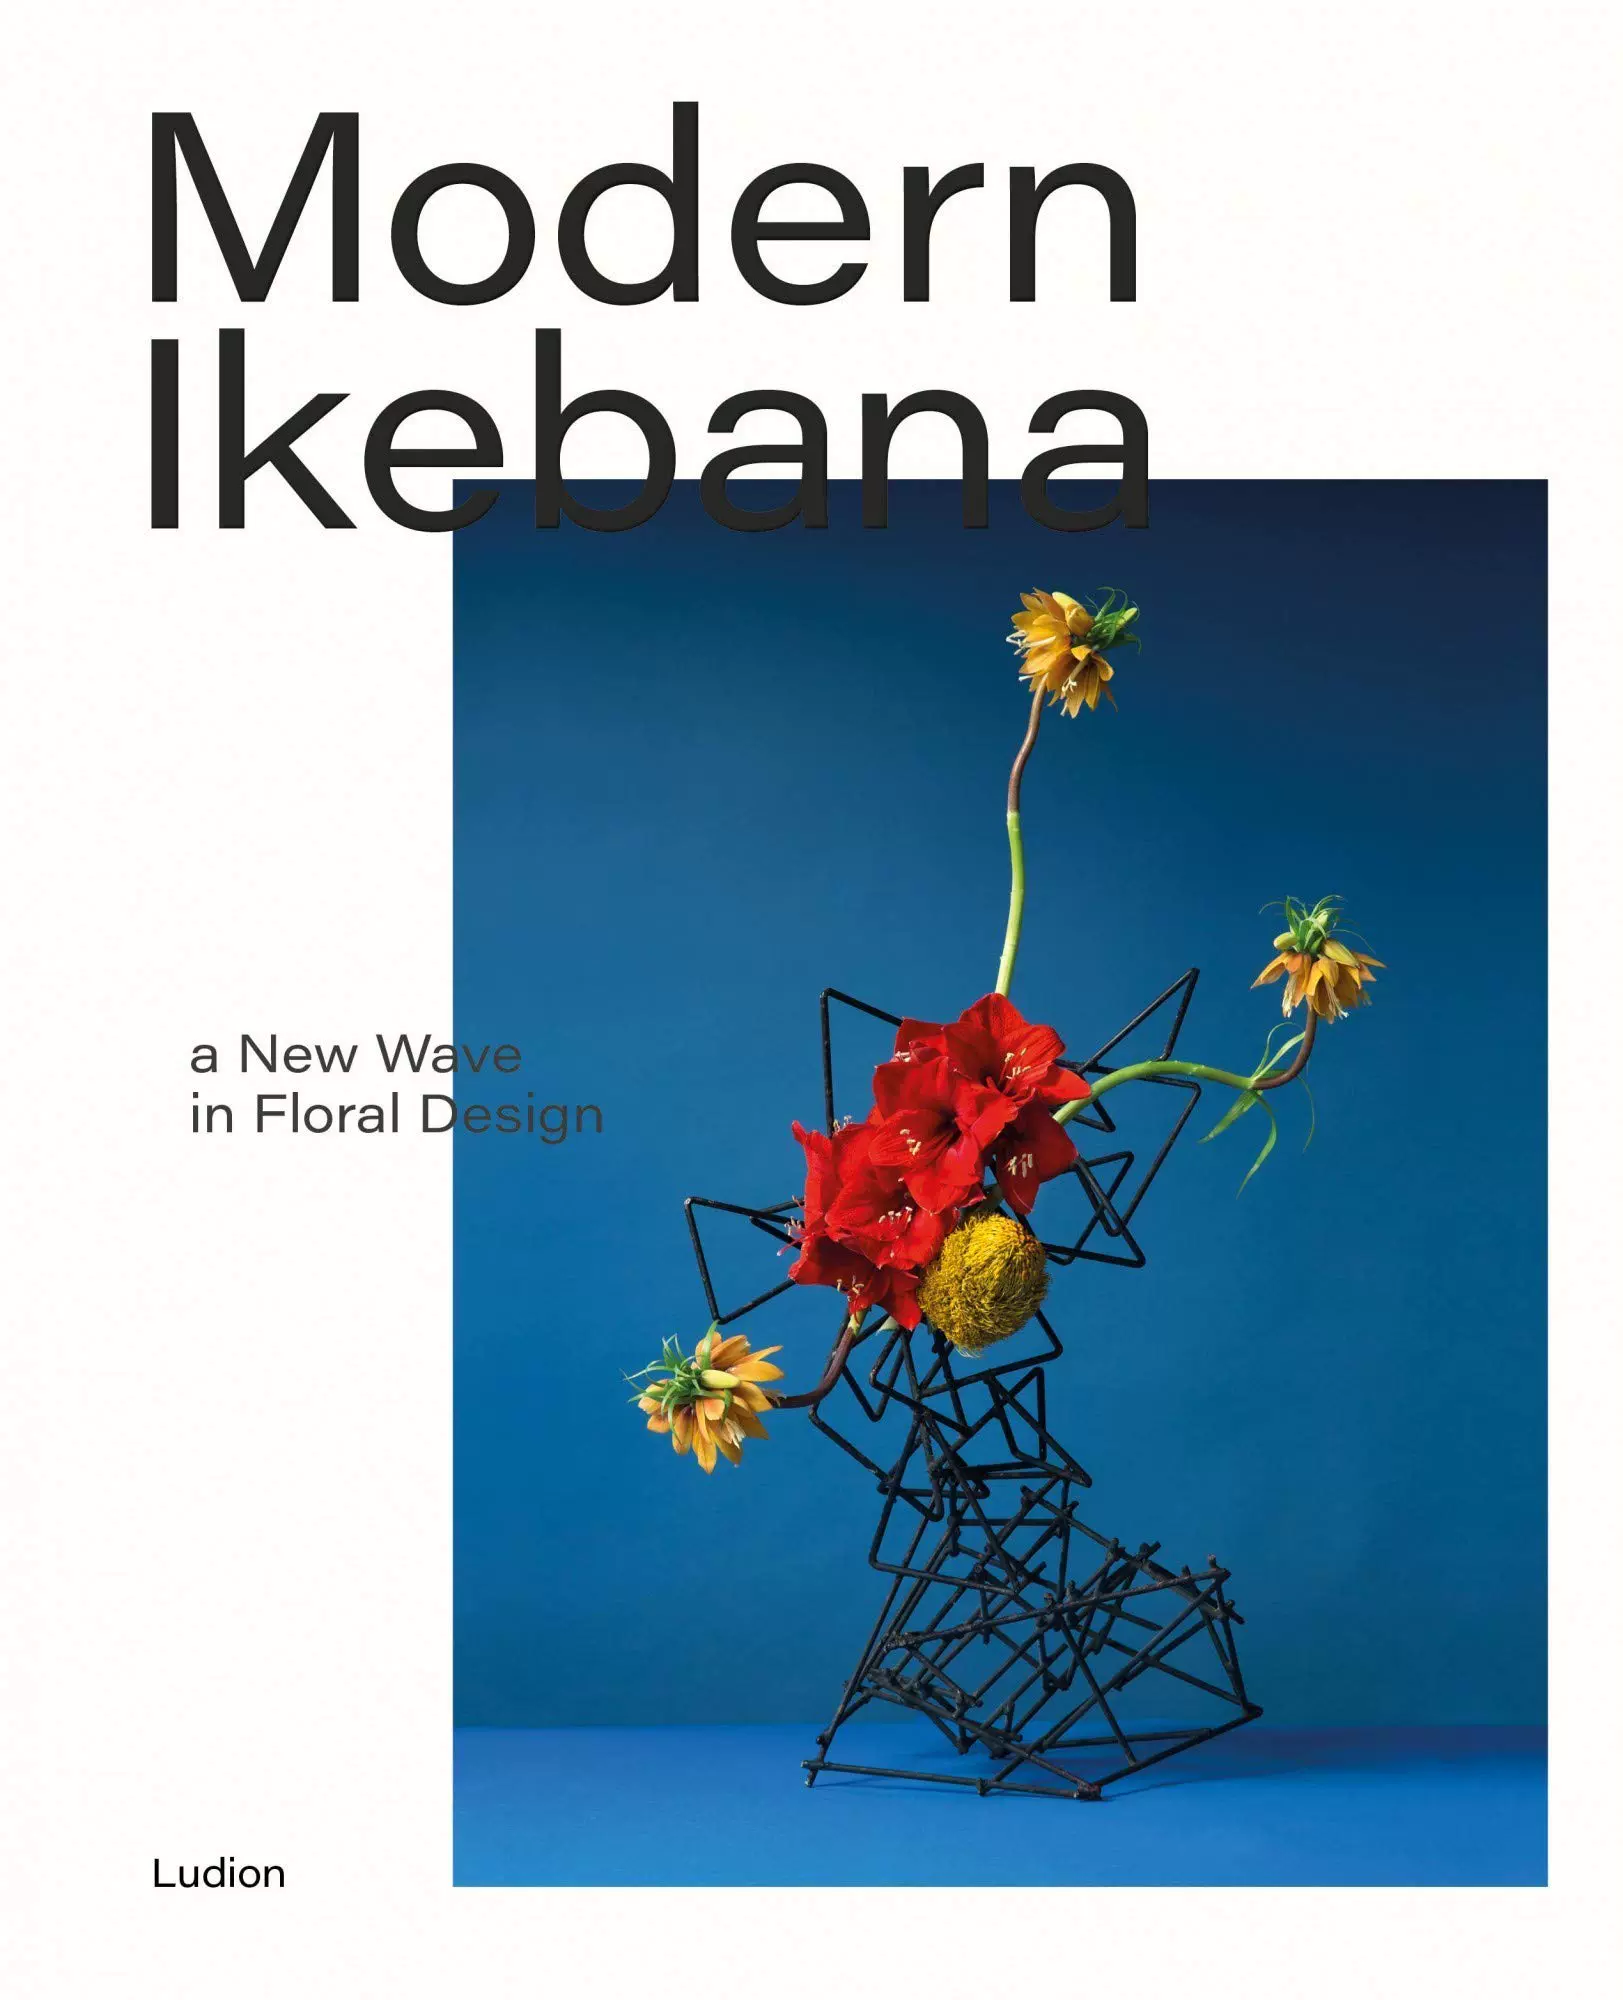 现代花道日本花艺设计的新潮流modern Ikebana A New Wave In Floral Design 英文原版艺术设计画册